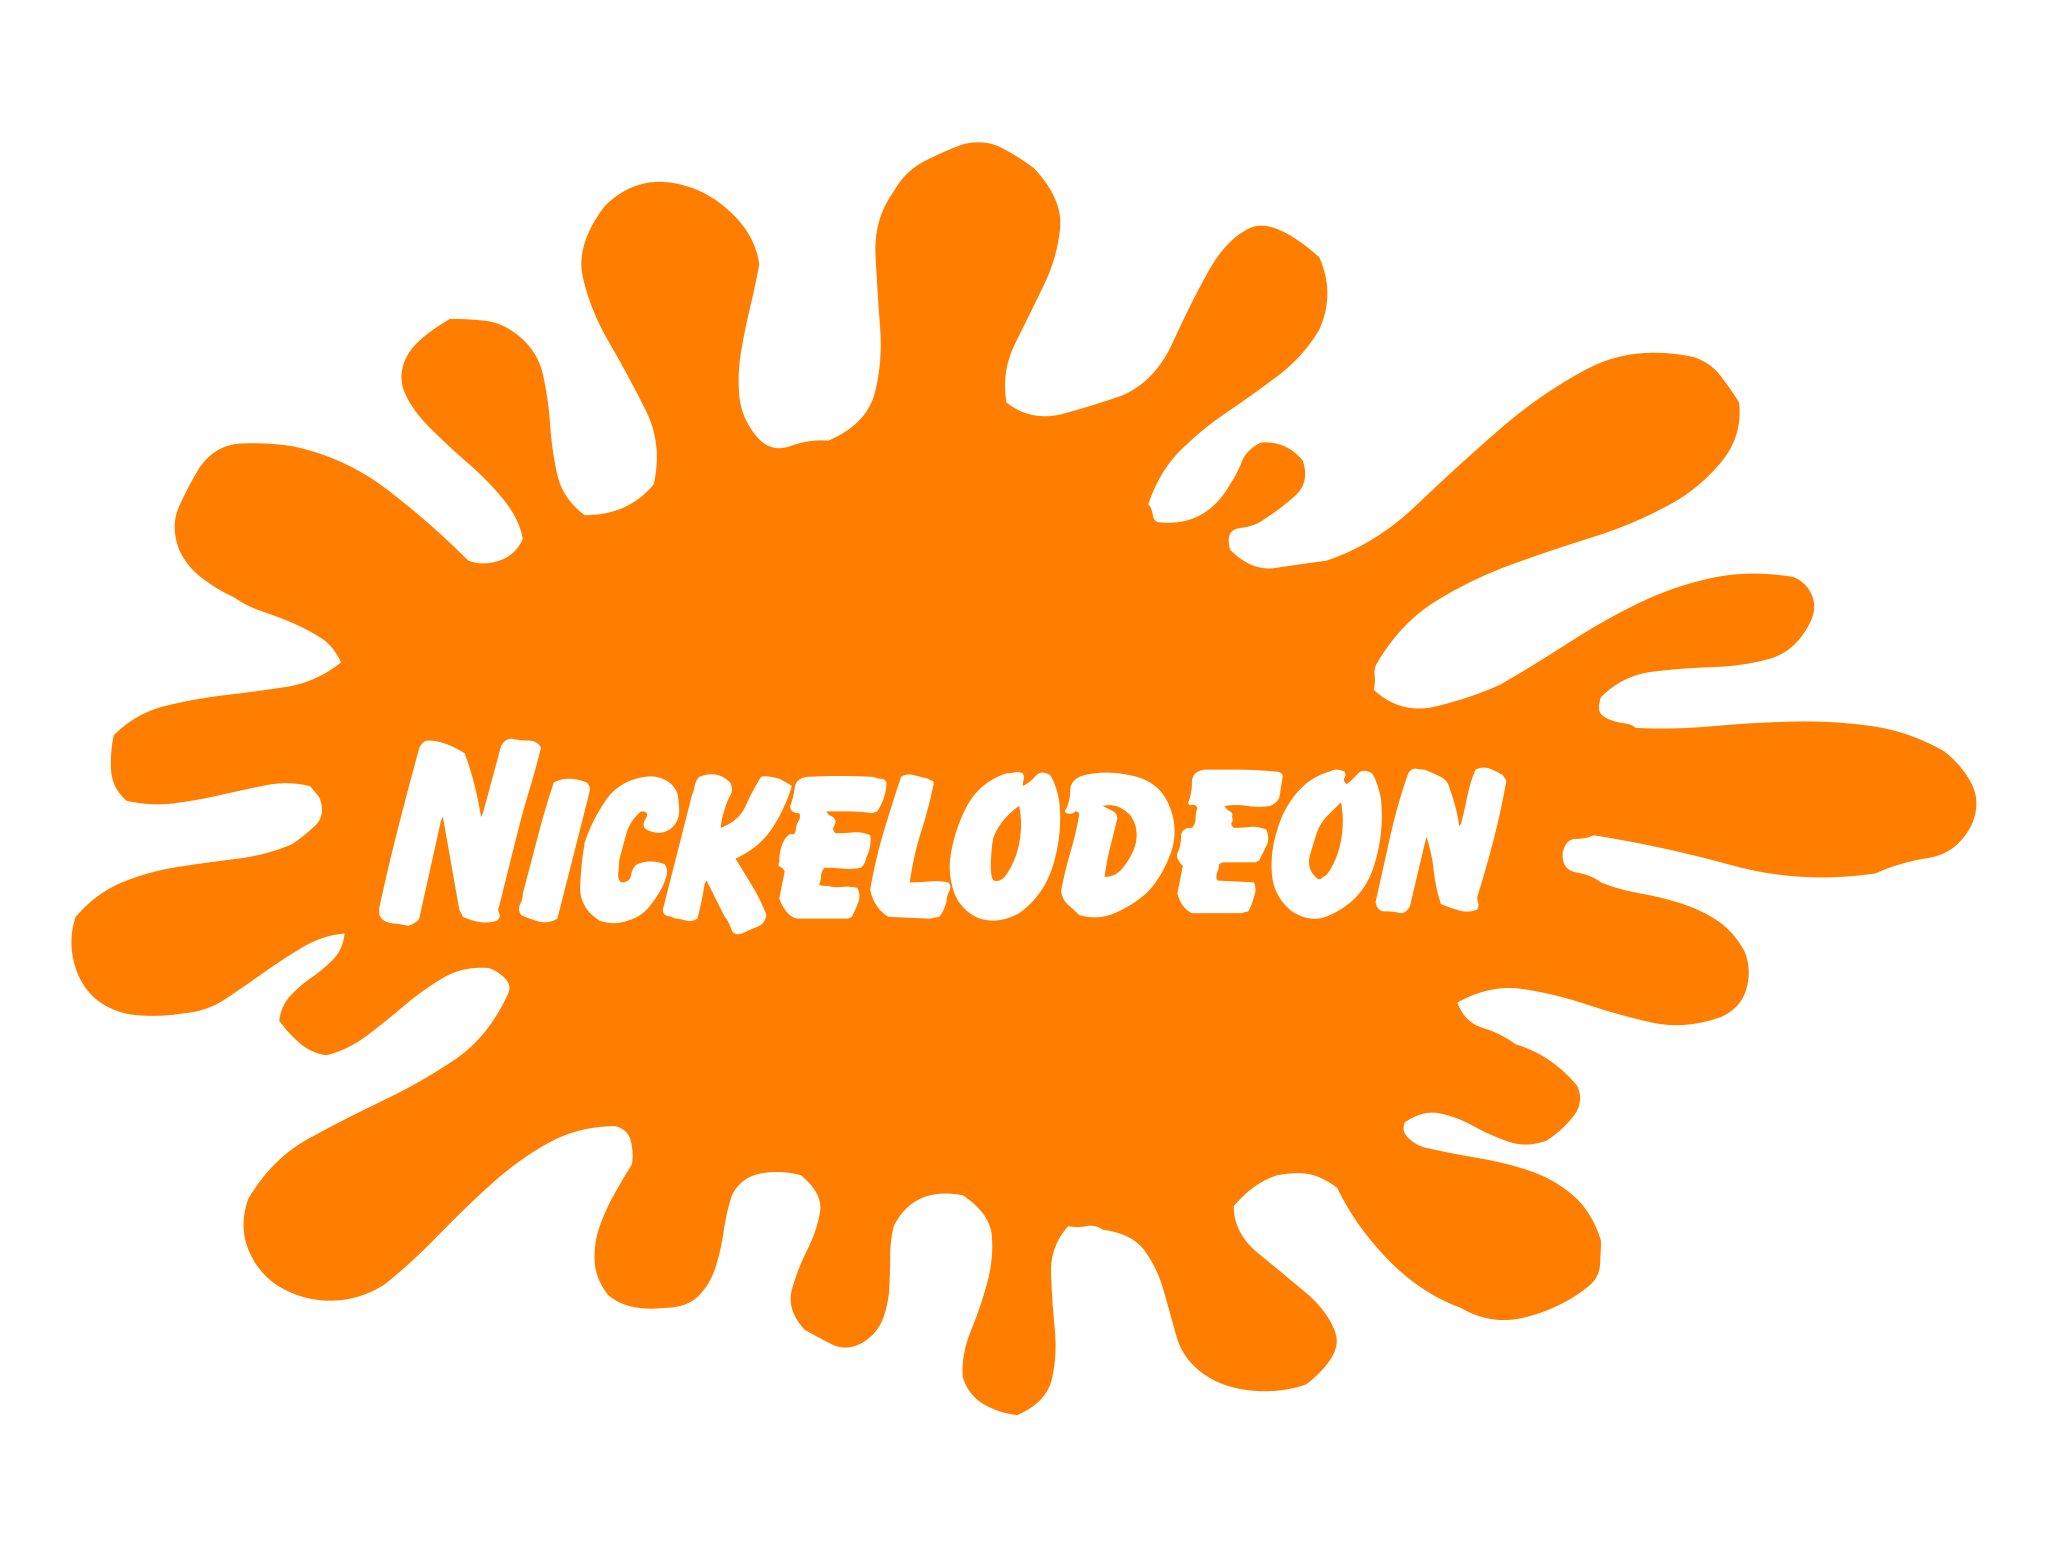 2018 Nickelodeon Logo - Nickelodeon Classic 90s Logo